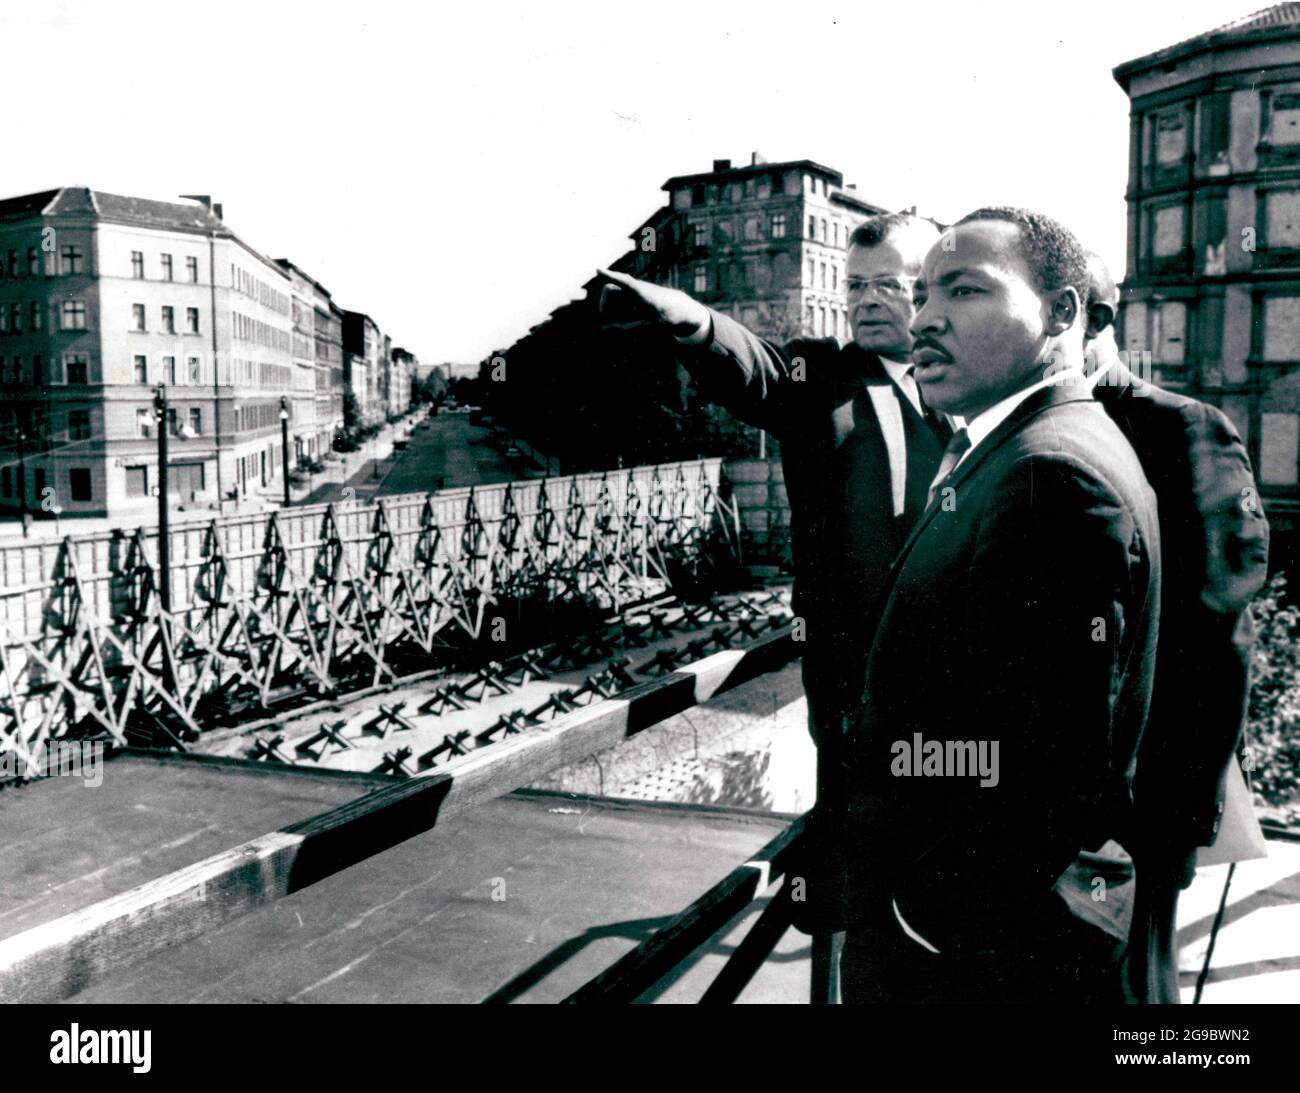 Allemagne, Berlin -- Dr. Martin Luther King à la frontière du secteur soviétique du mur dans la Bernauer Strasse. Herr Werner Steltzer, directeur du Centre d'information de Berlin, indique des points d'intérêt, 1964 Banque D'Images